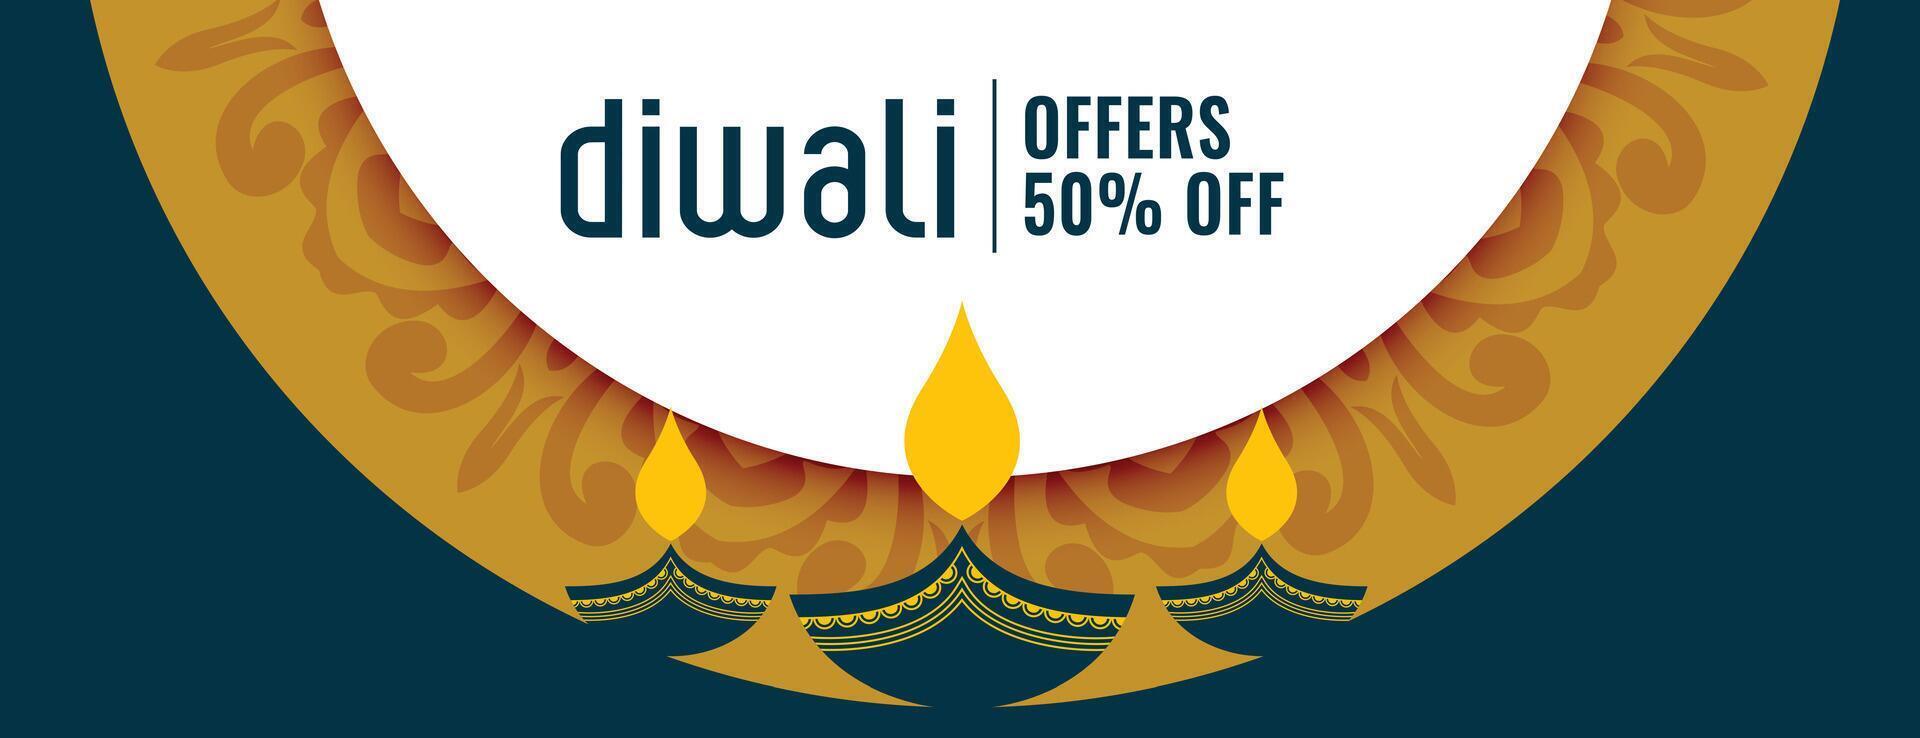 premium diwali offer banner with details and artistic diya design vector illustration